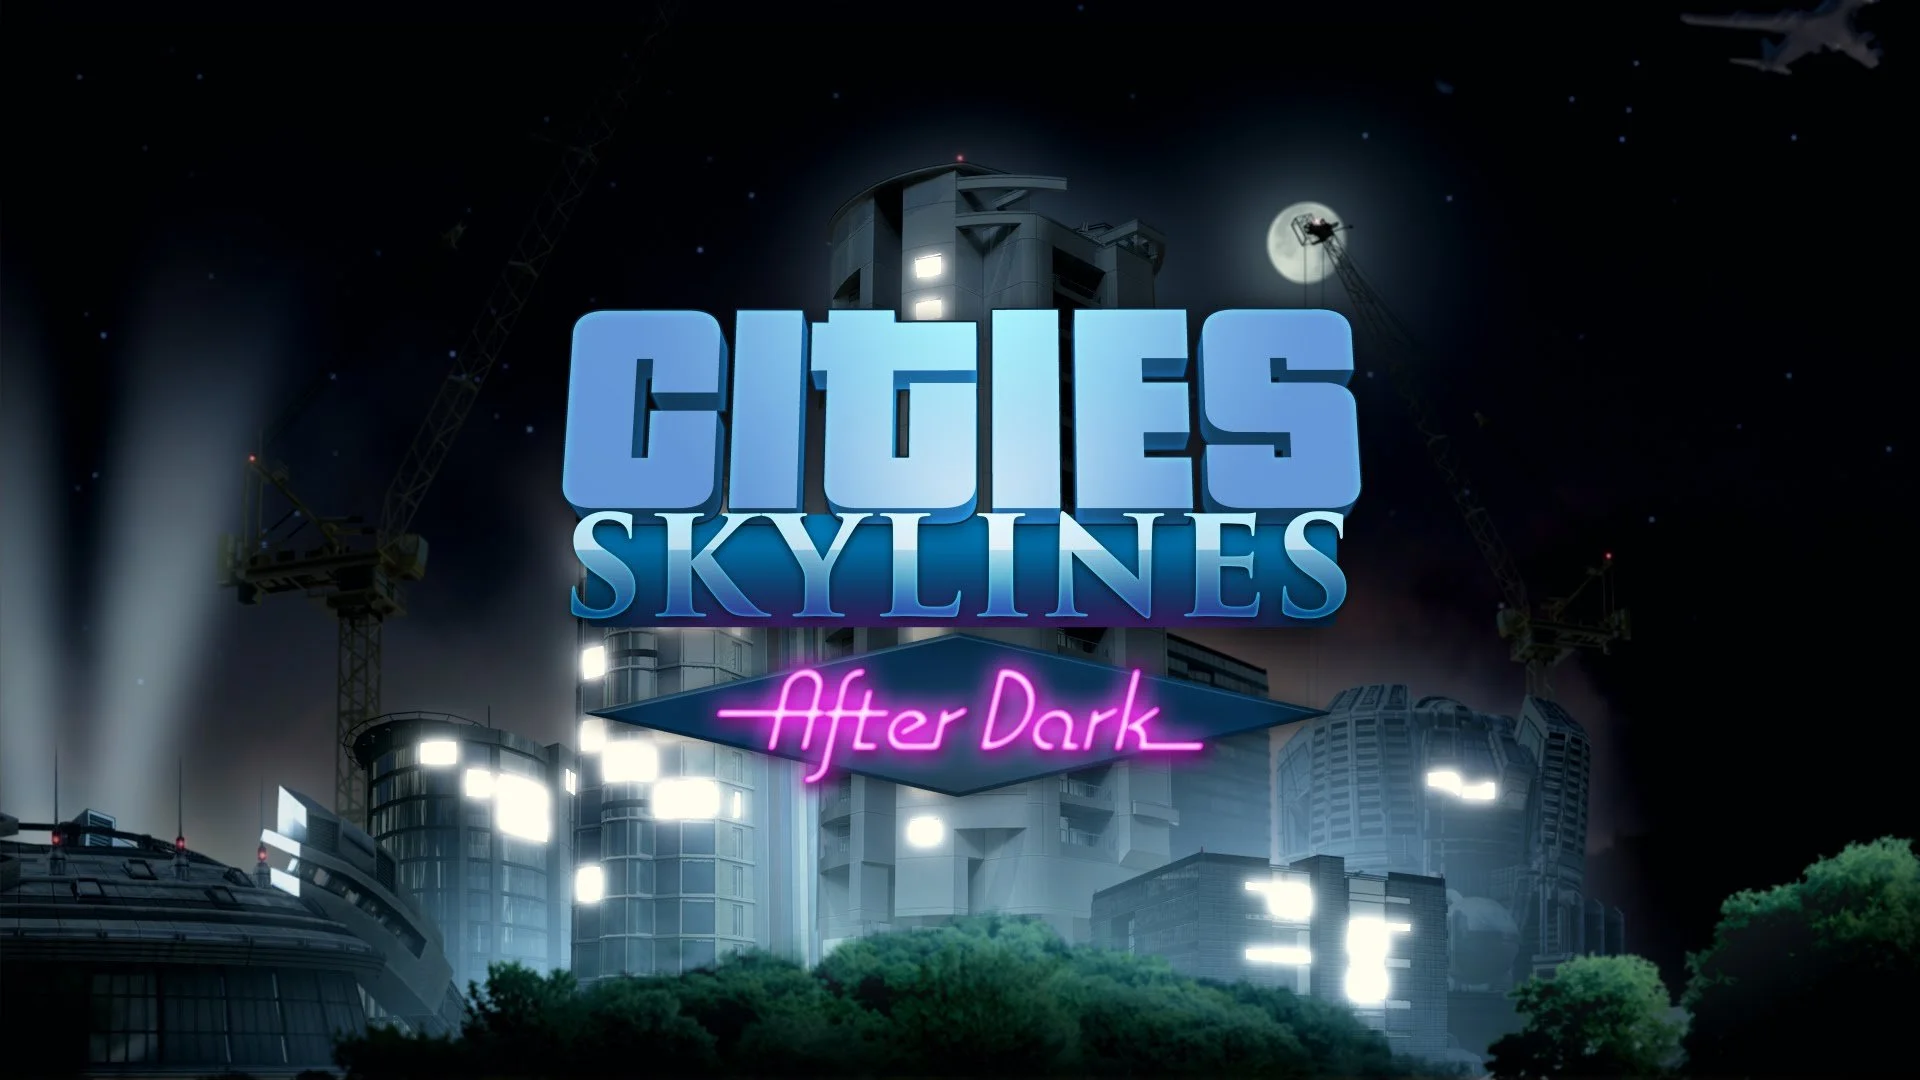 After Dark для Cities: Skylines поступит в продажу в конце сентября - фото 1